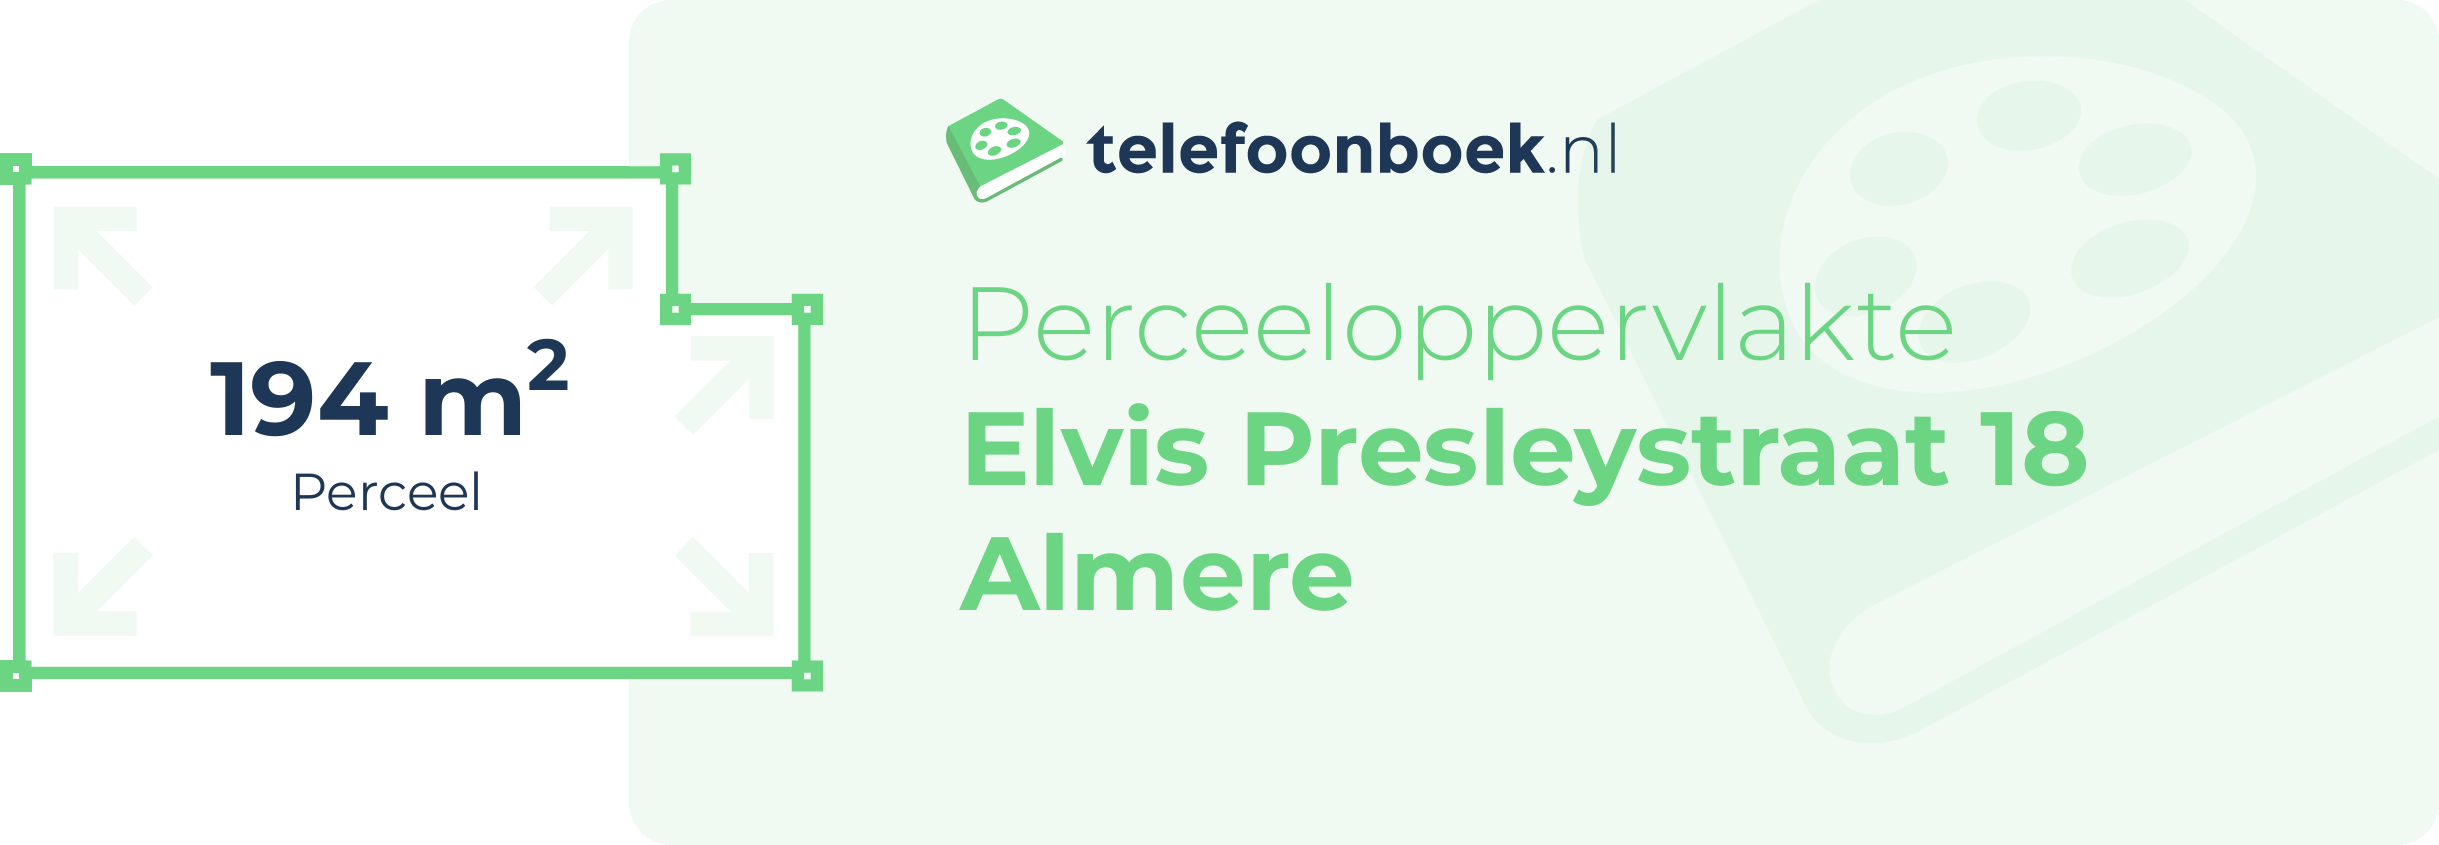 Perceeloppervlakte Elvis Presleystraat 18 Almere